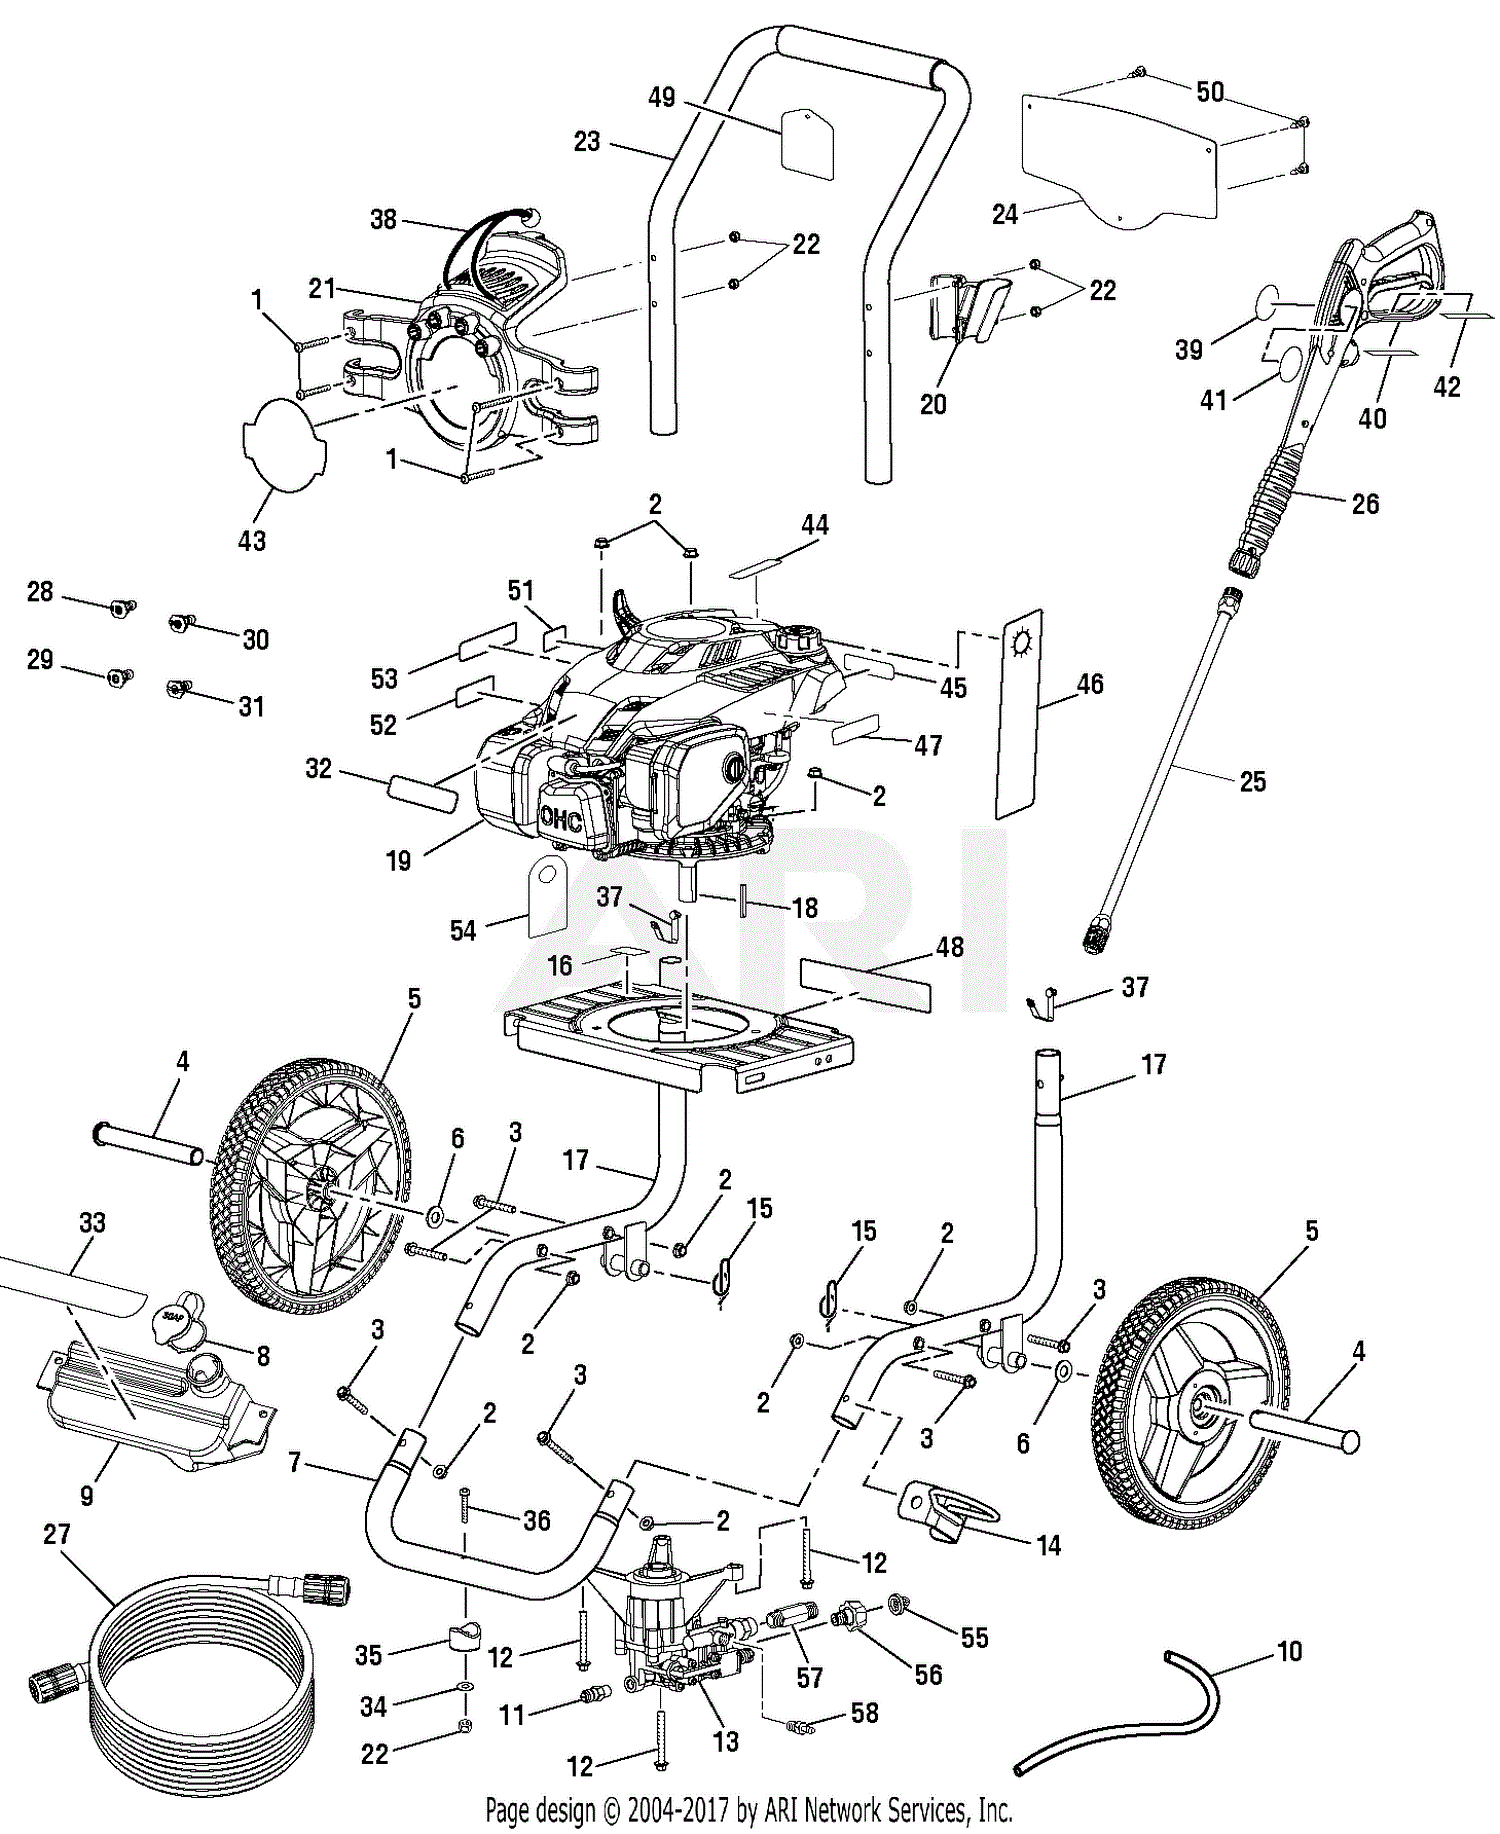 Pressure Washer Parts Diagram - Heat exchanger spare parts